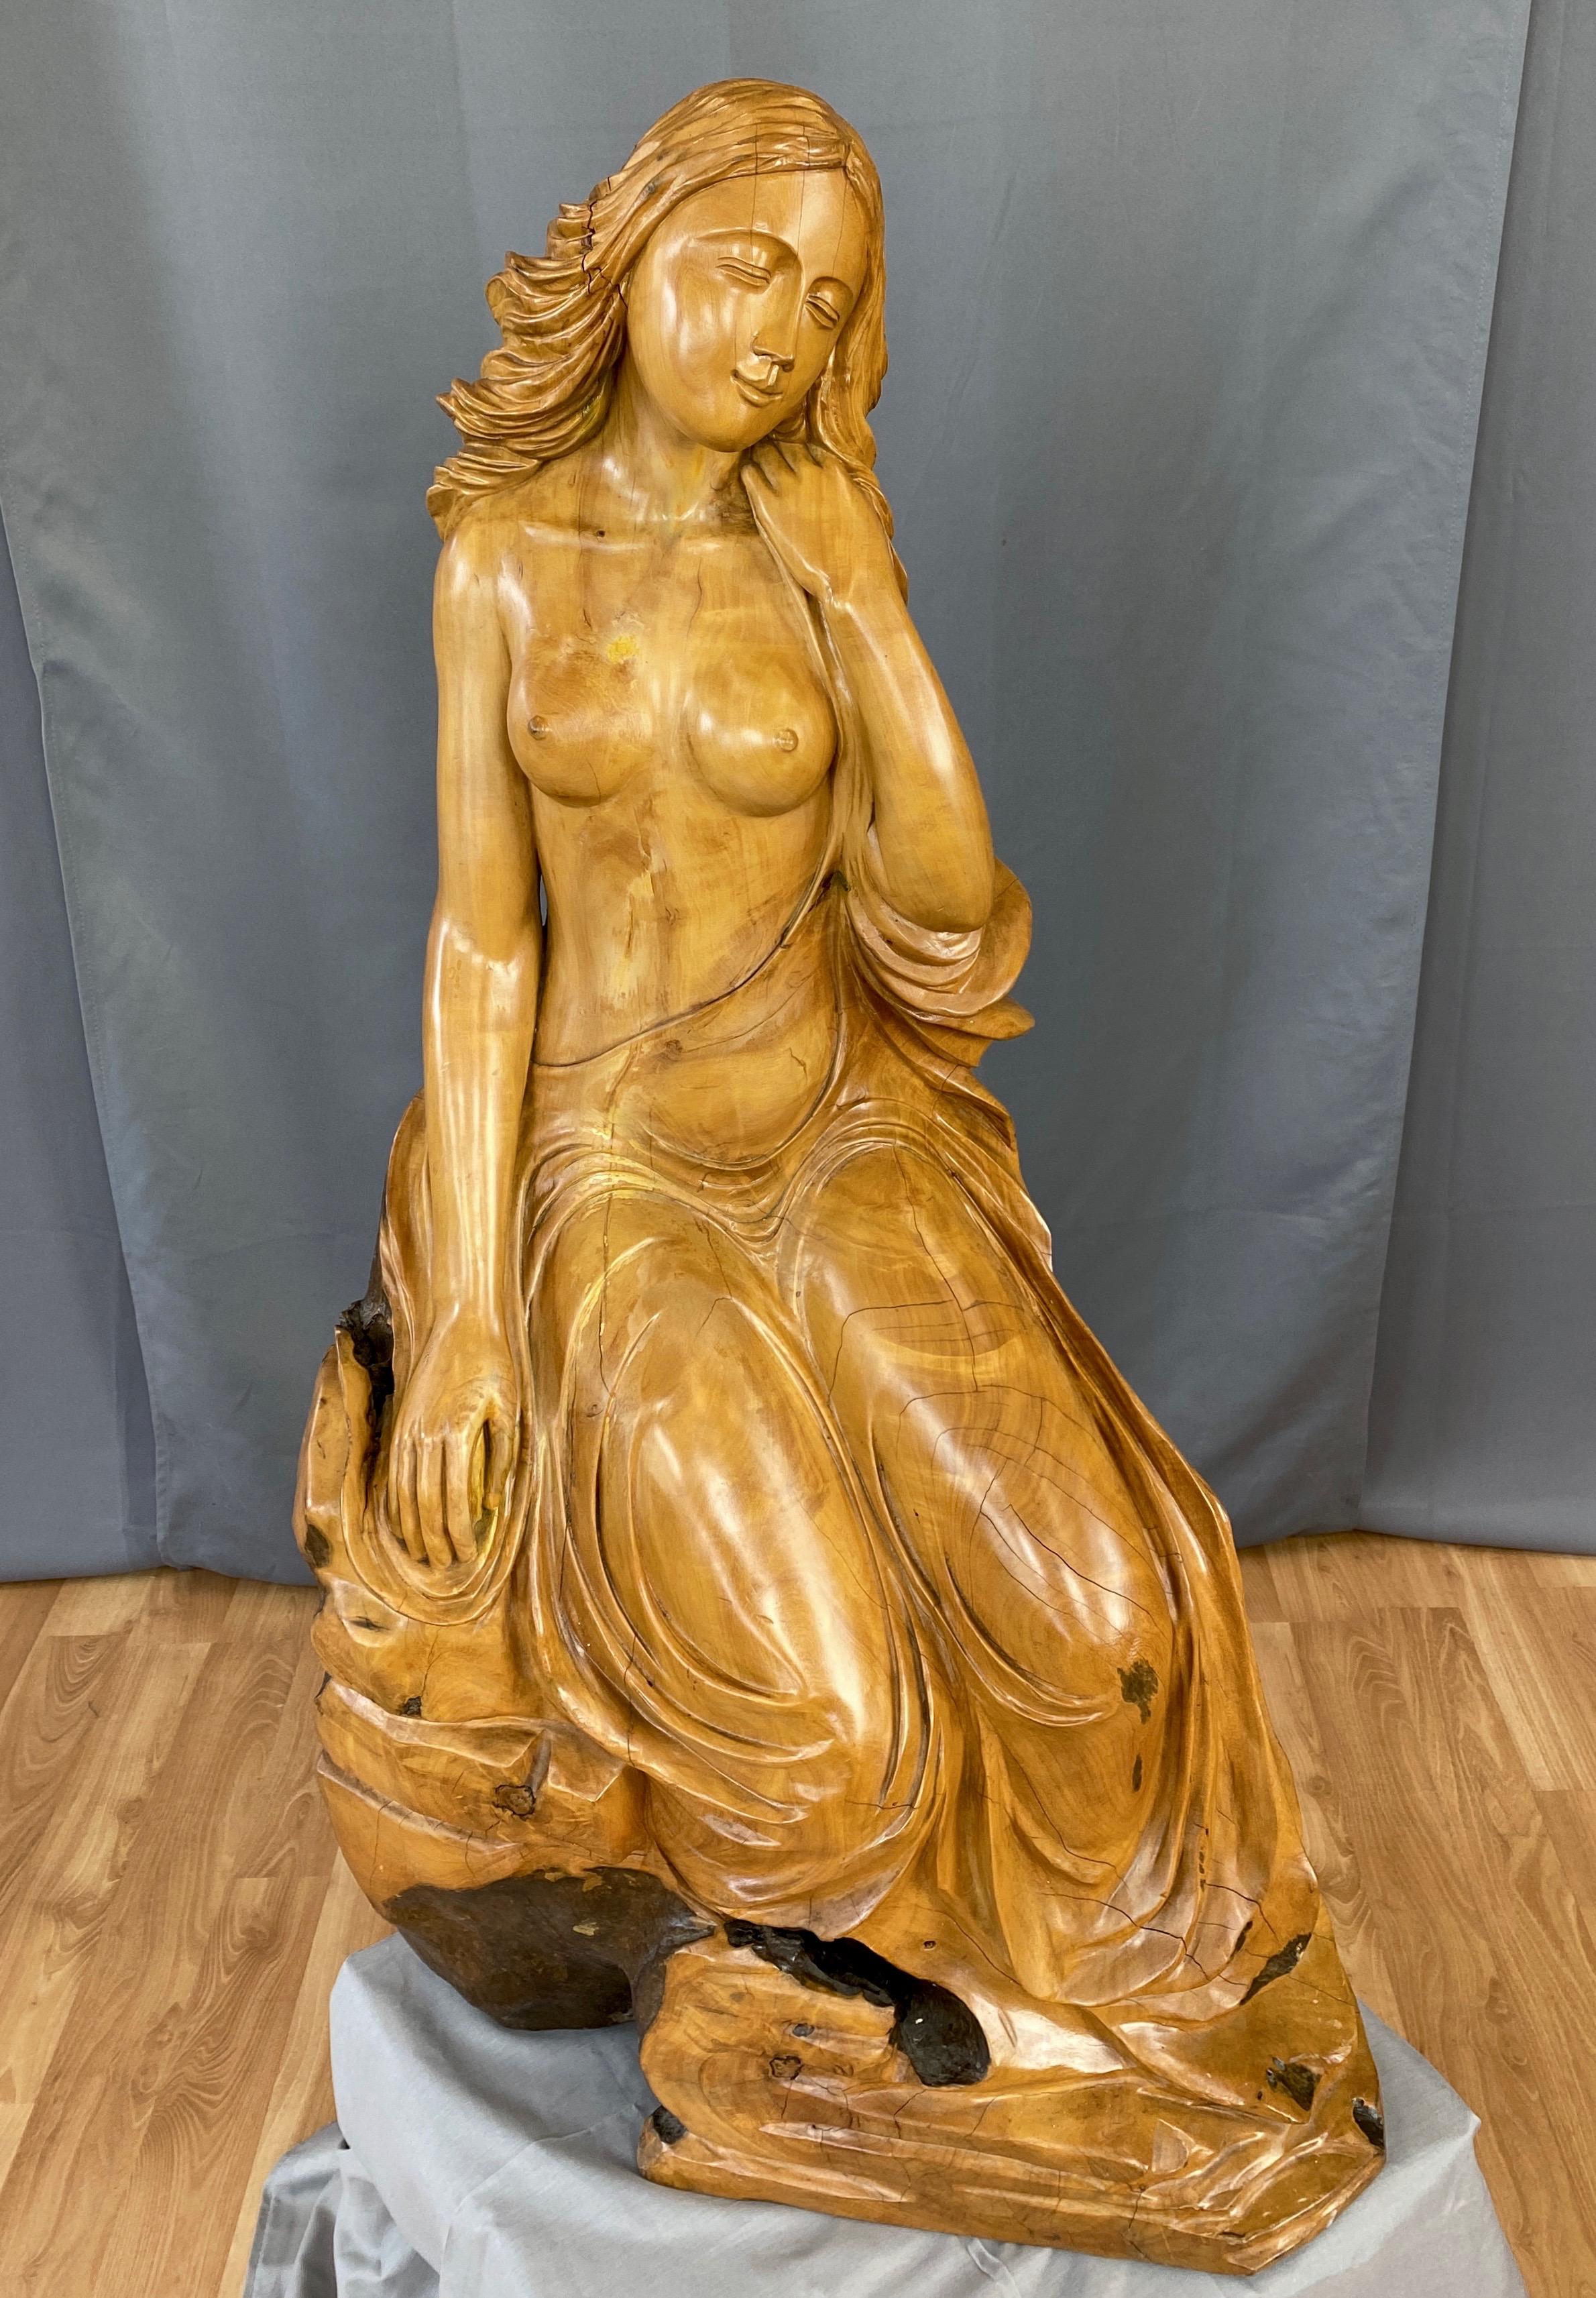 Large Hand-Carved Cypress Knee Figural Sculpture After Botticelli's Venus, 1970s For Sale 2